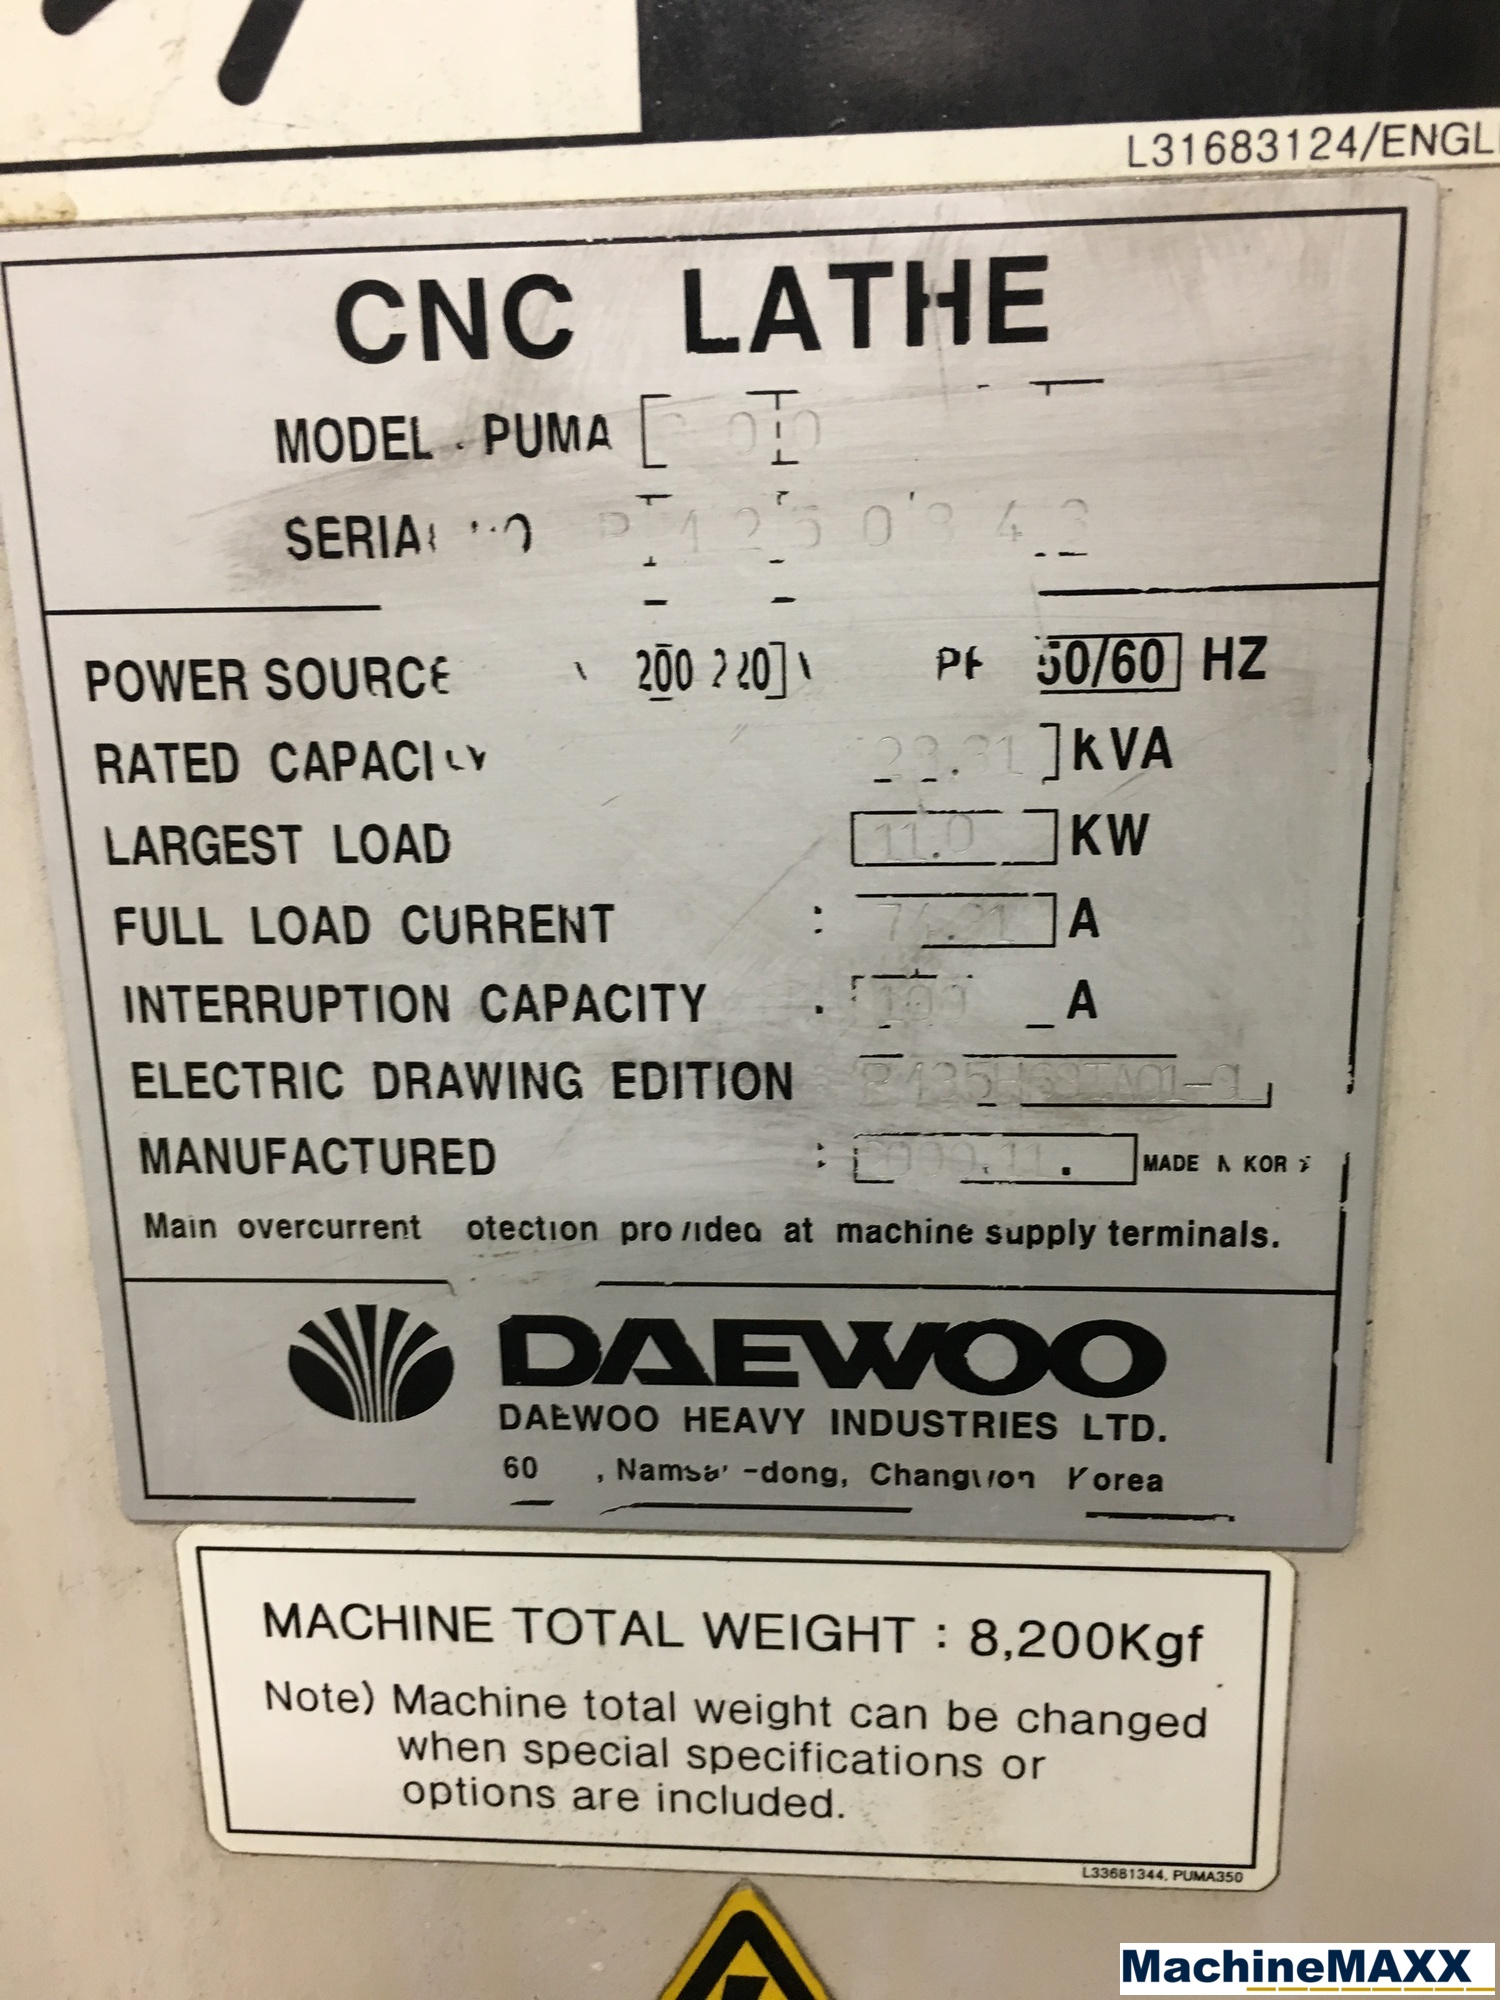 2000 DAEWOO Puma 300 GL 5-Axis or More CNC Lathes | MachineMaxx